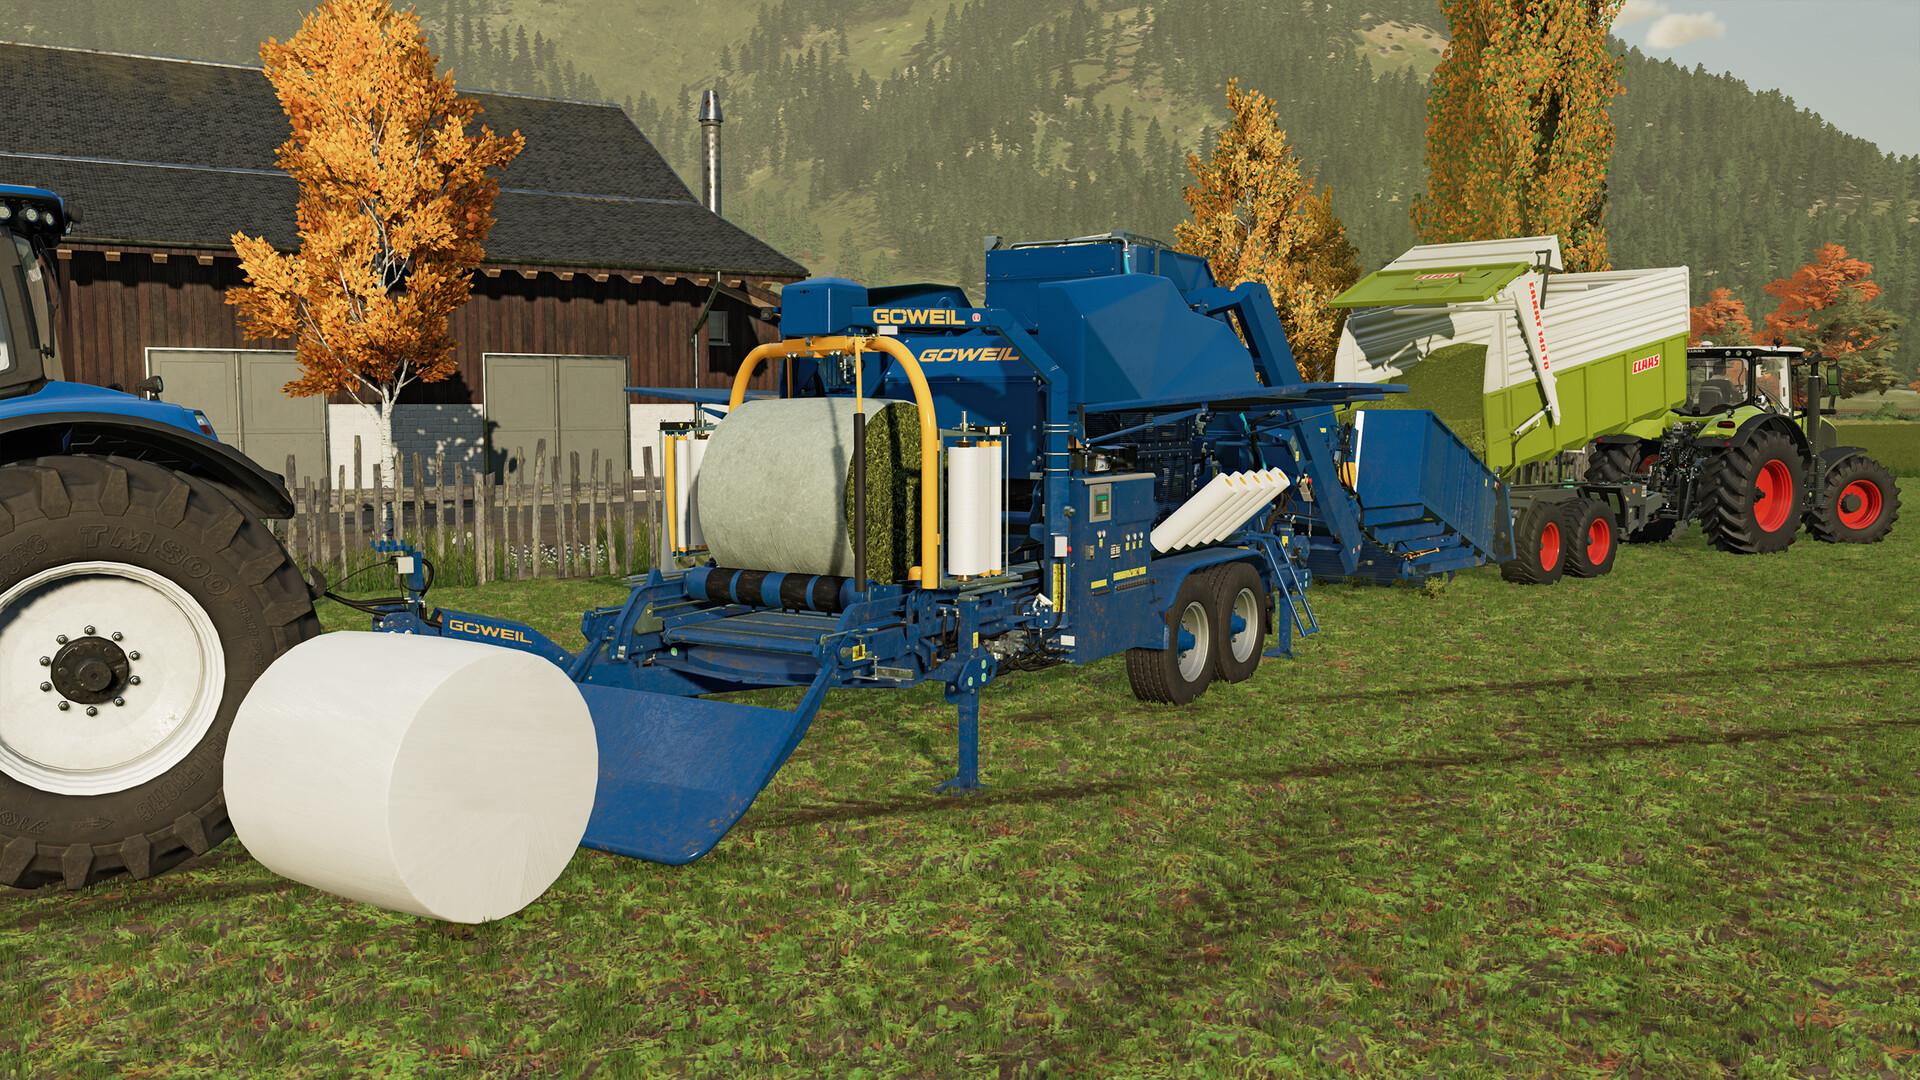 Jogo de simulador de agricultura com máquinas agrícolas caras